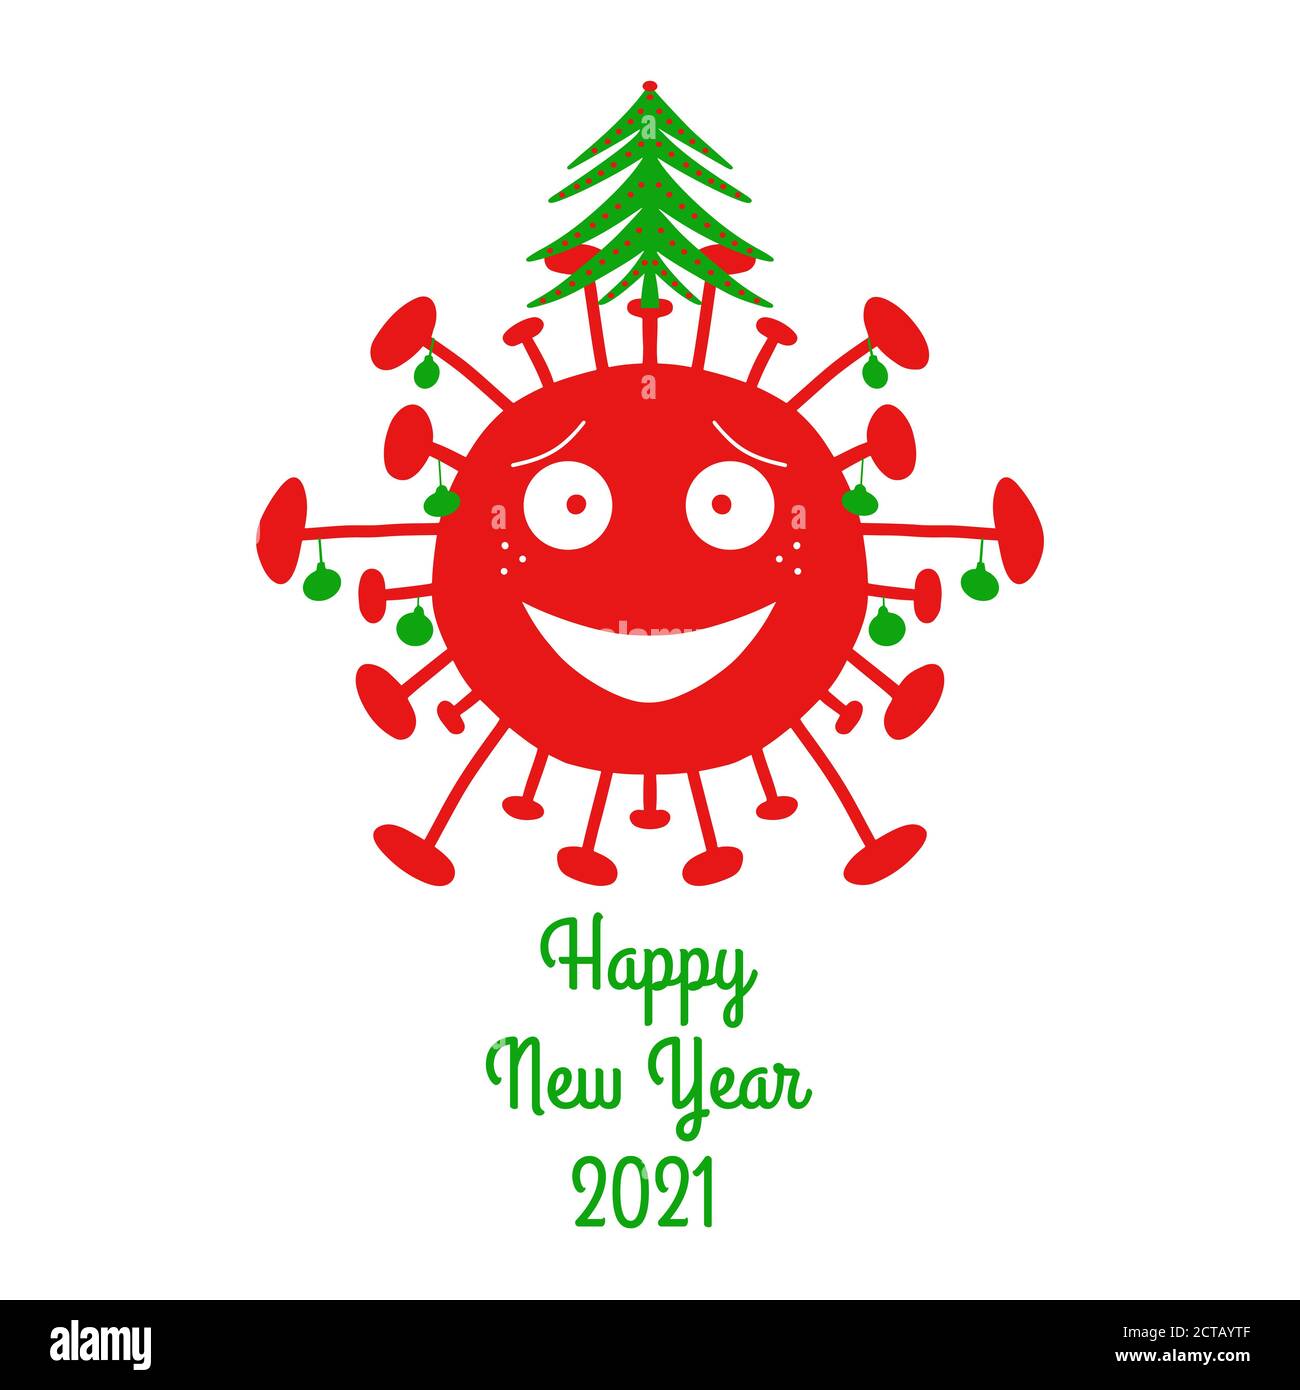 Bonne année 2021. Bactéries coronavirus de dessin animé rouge avec boules de noël vertes et sapin sur le dessus. Isolé sur un fond blanc. Brut vectoriel Illustration de Vecteur